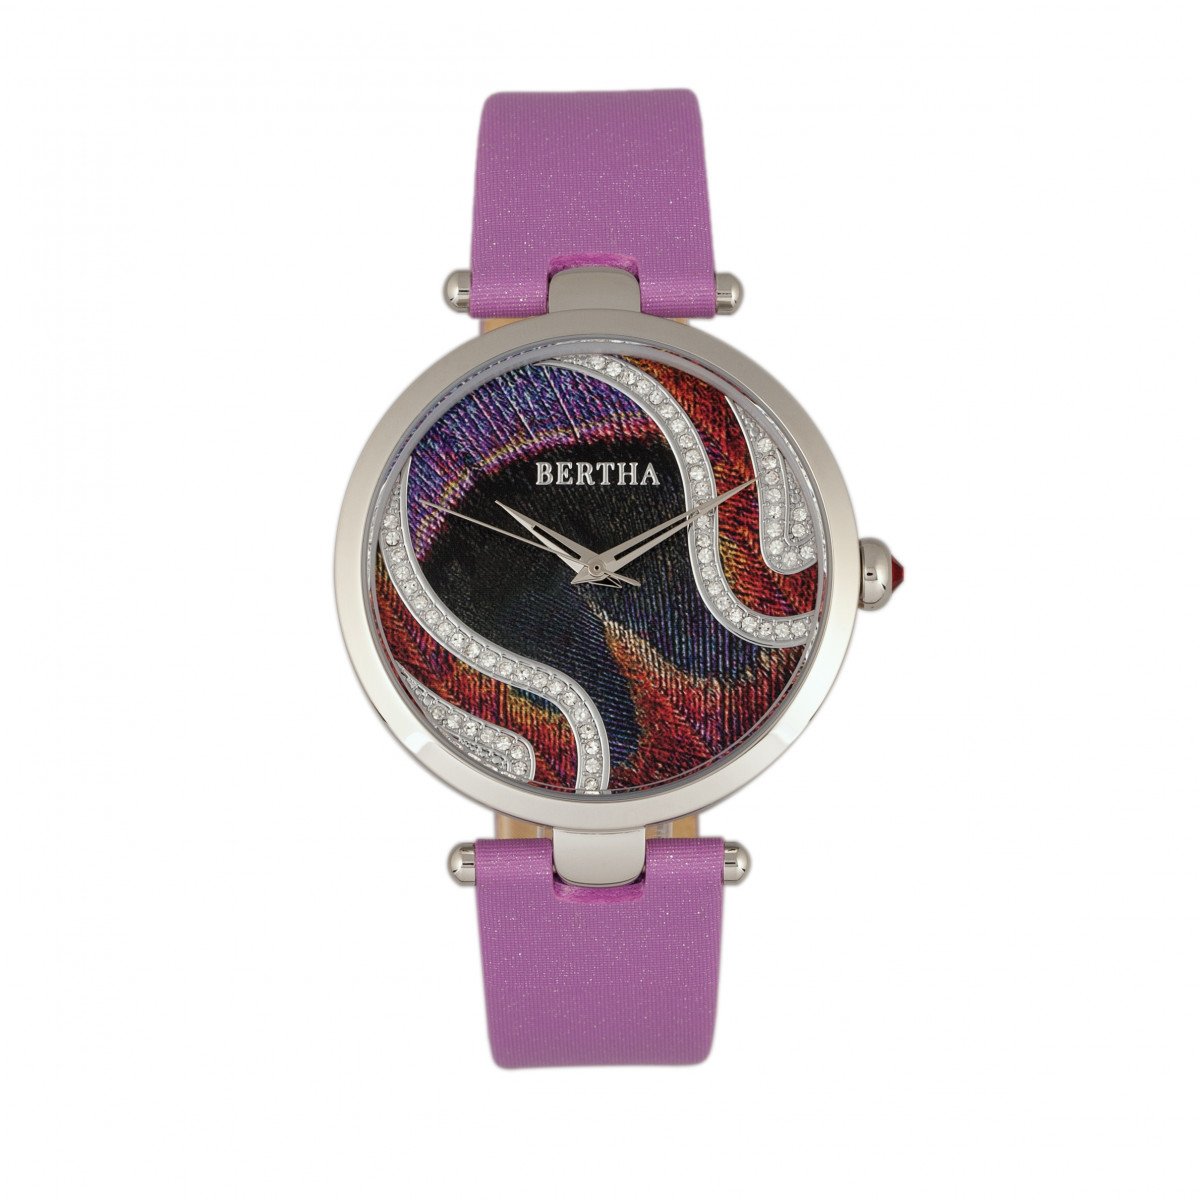 Bertha Trisha Leather-Band Watch w/Swarovski Crystals - Lilac - BTHBR8002